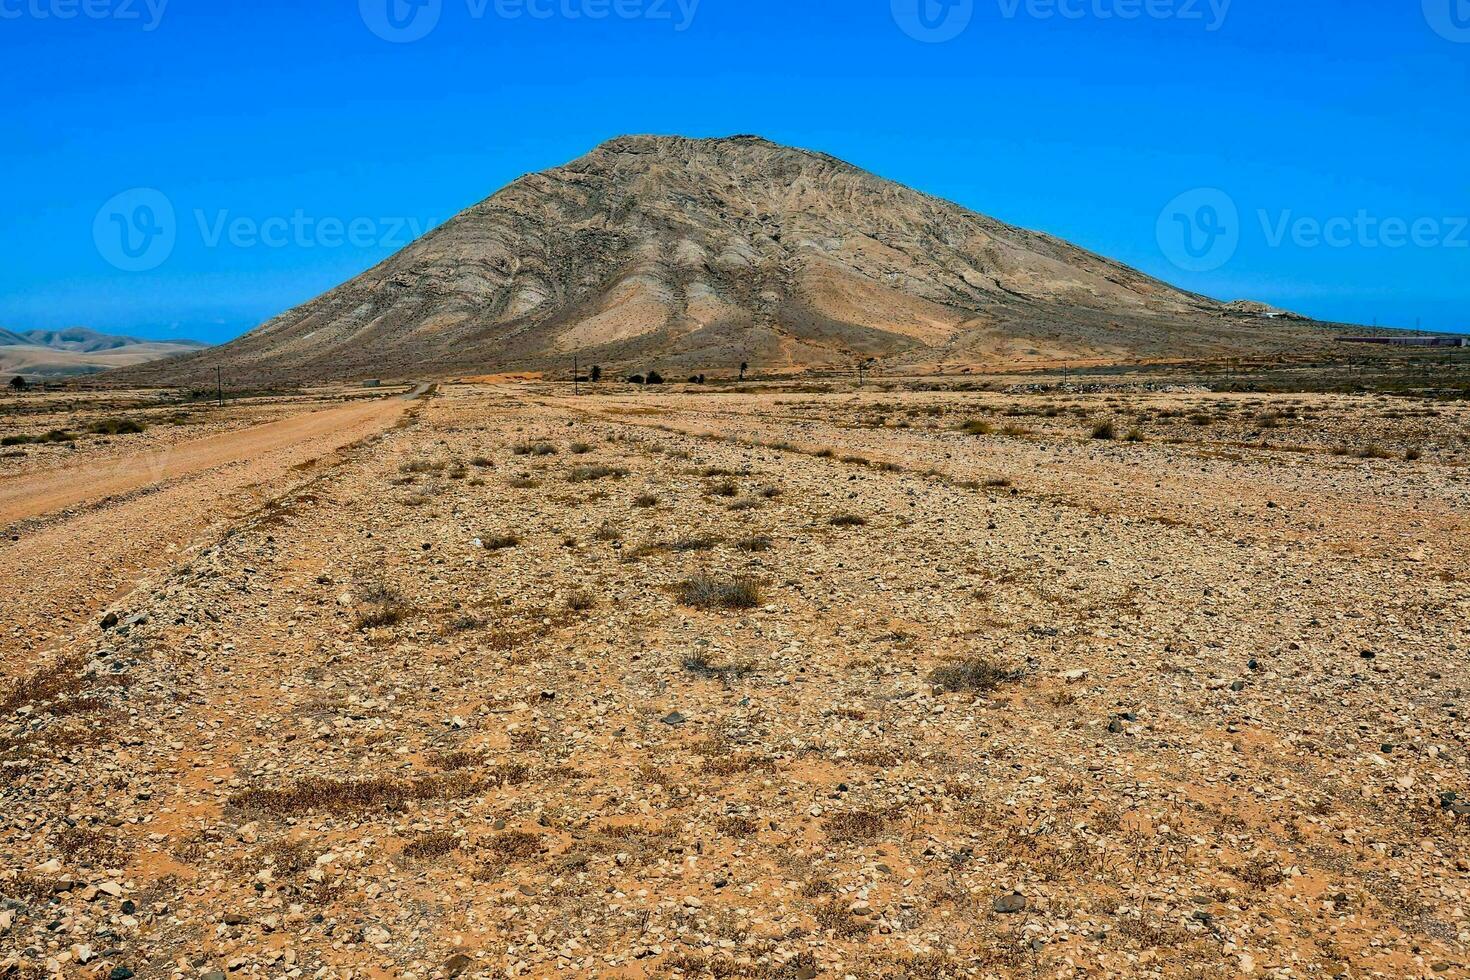 vista escénica del desierto foto